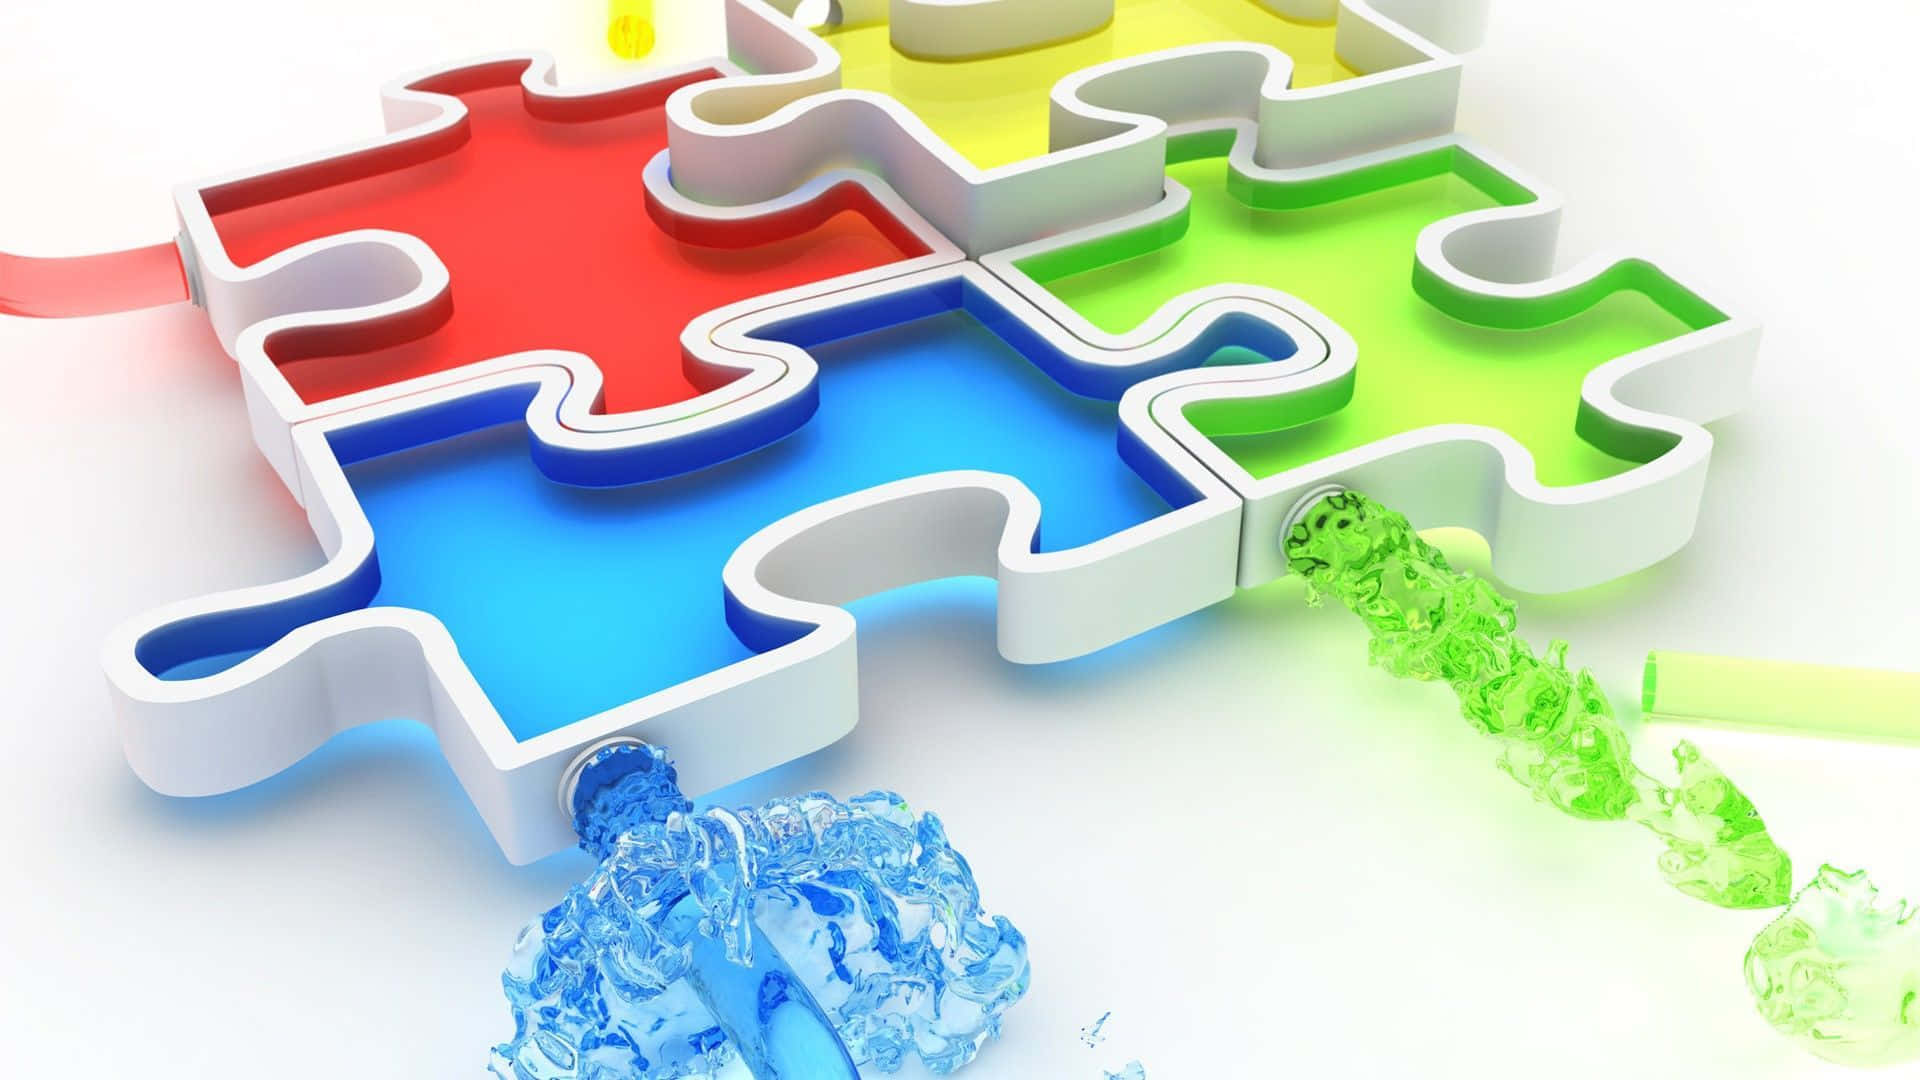 Bildmit 3d-puzzlestücken In Verschiedenen Farben